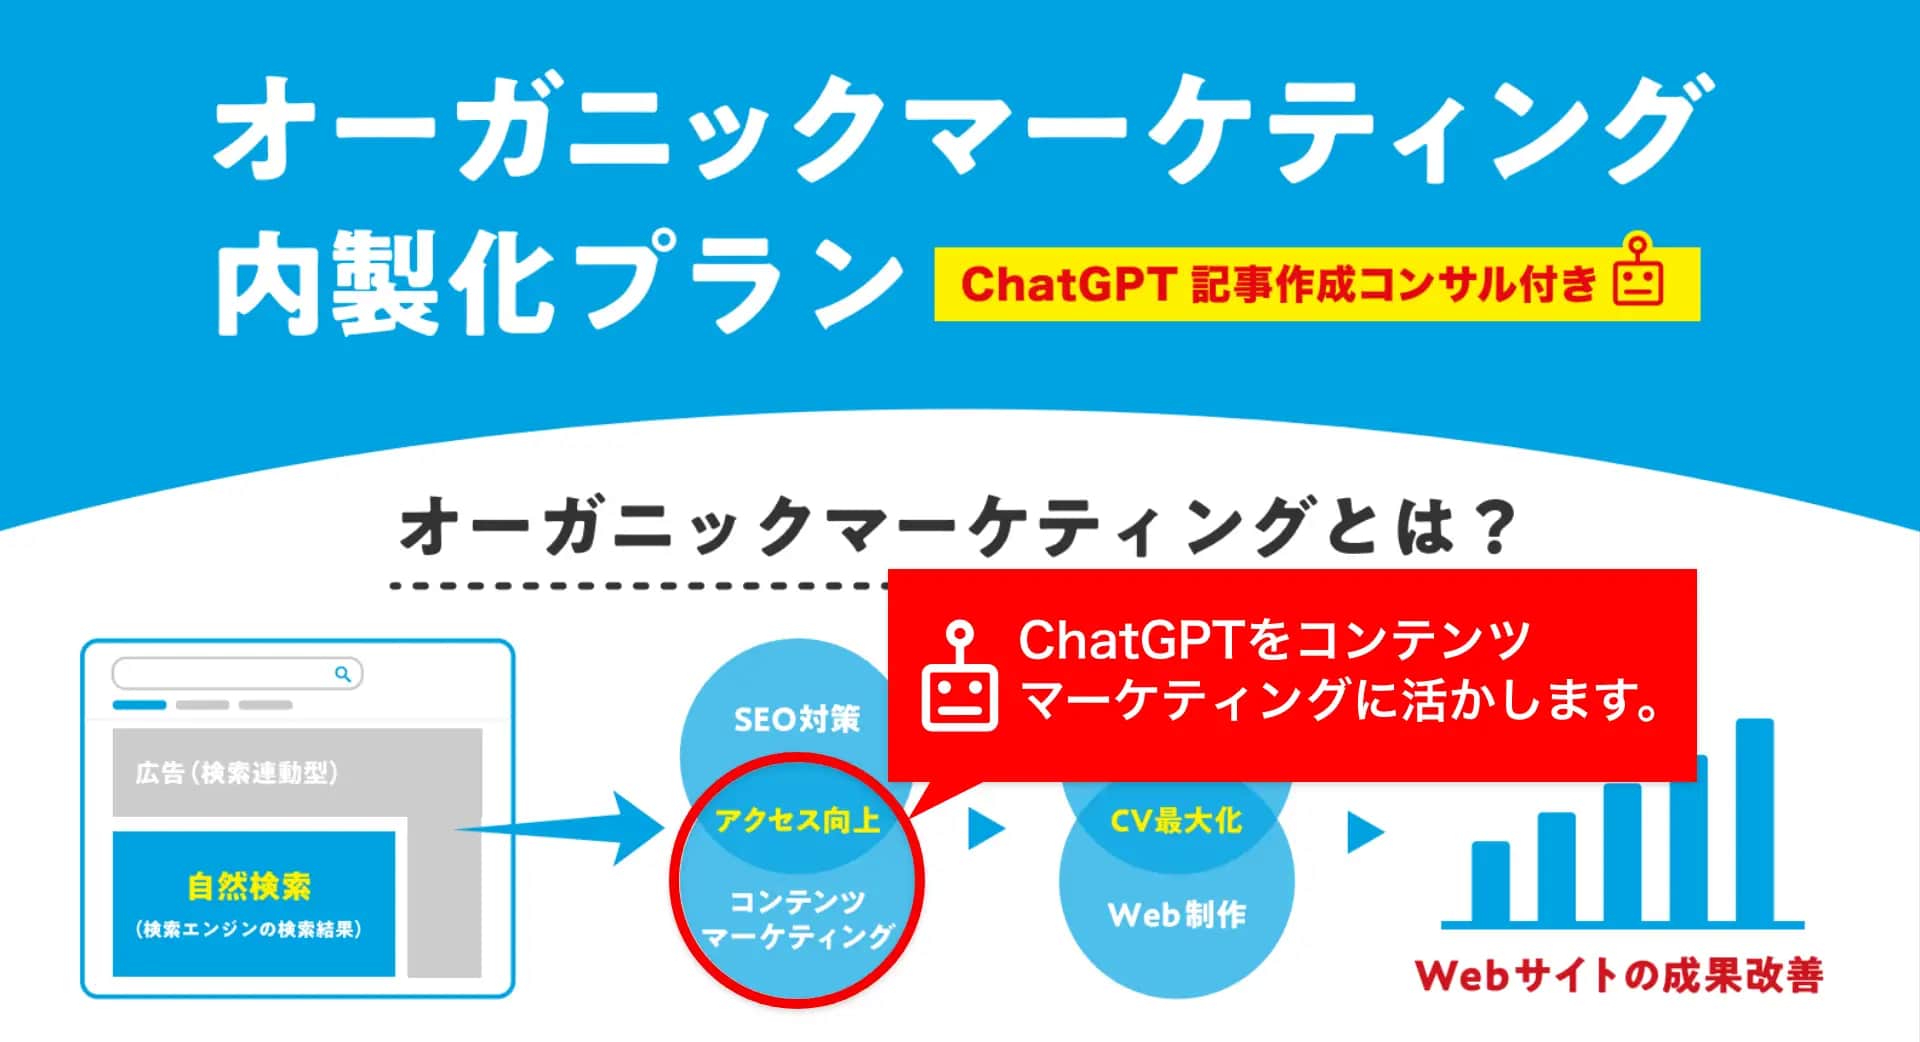 記事作成方法とSEOノウハウもセットで提供「ChatGPT記事作成コンサルティング」